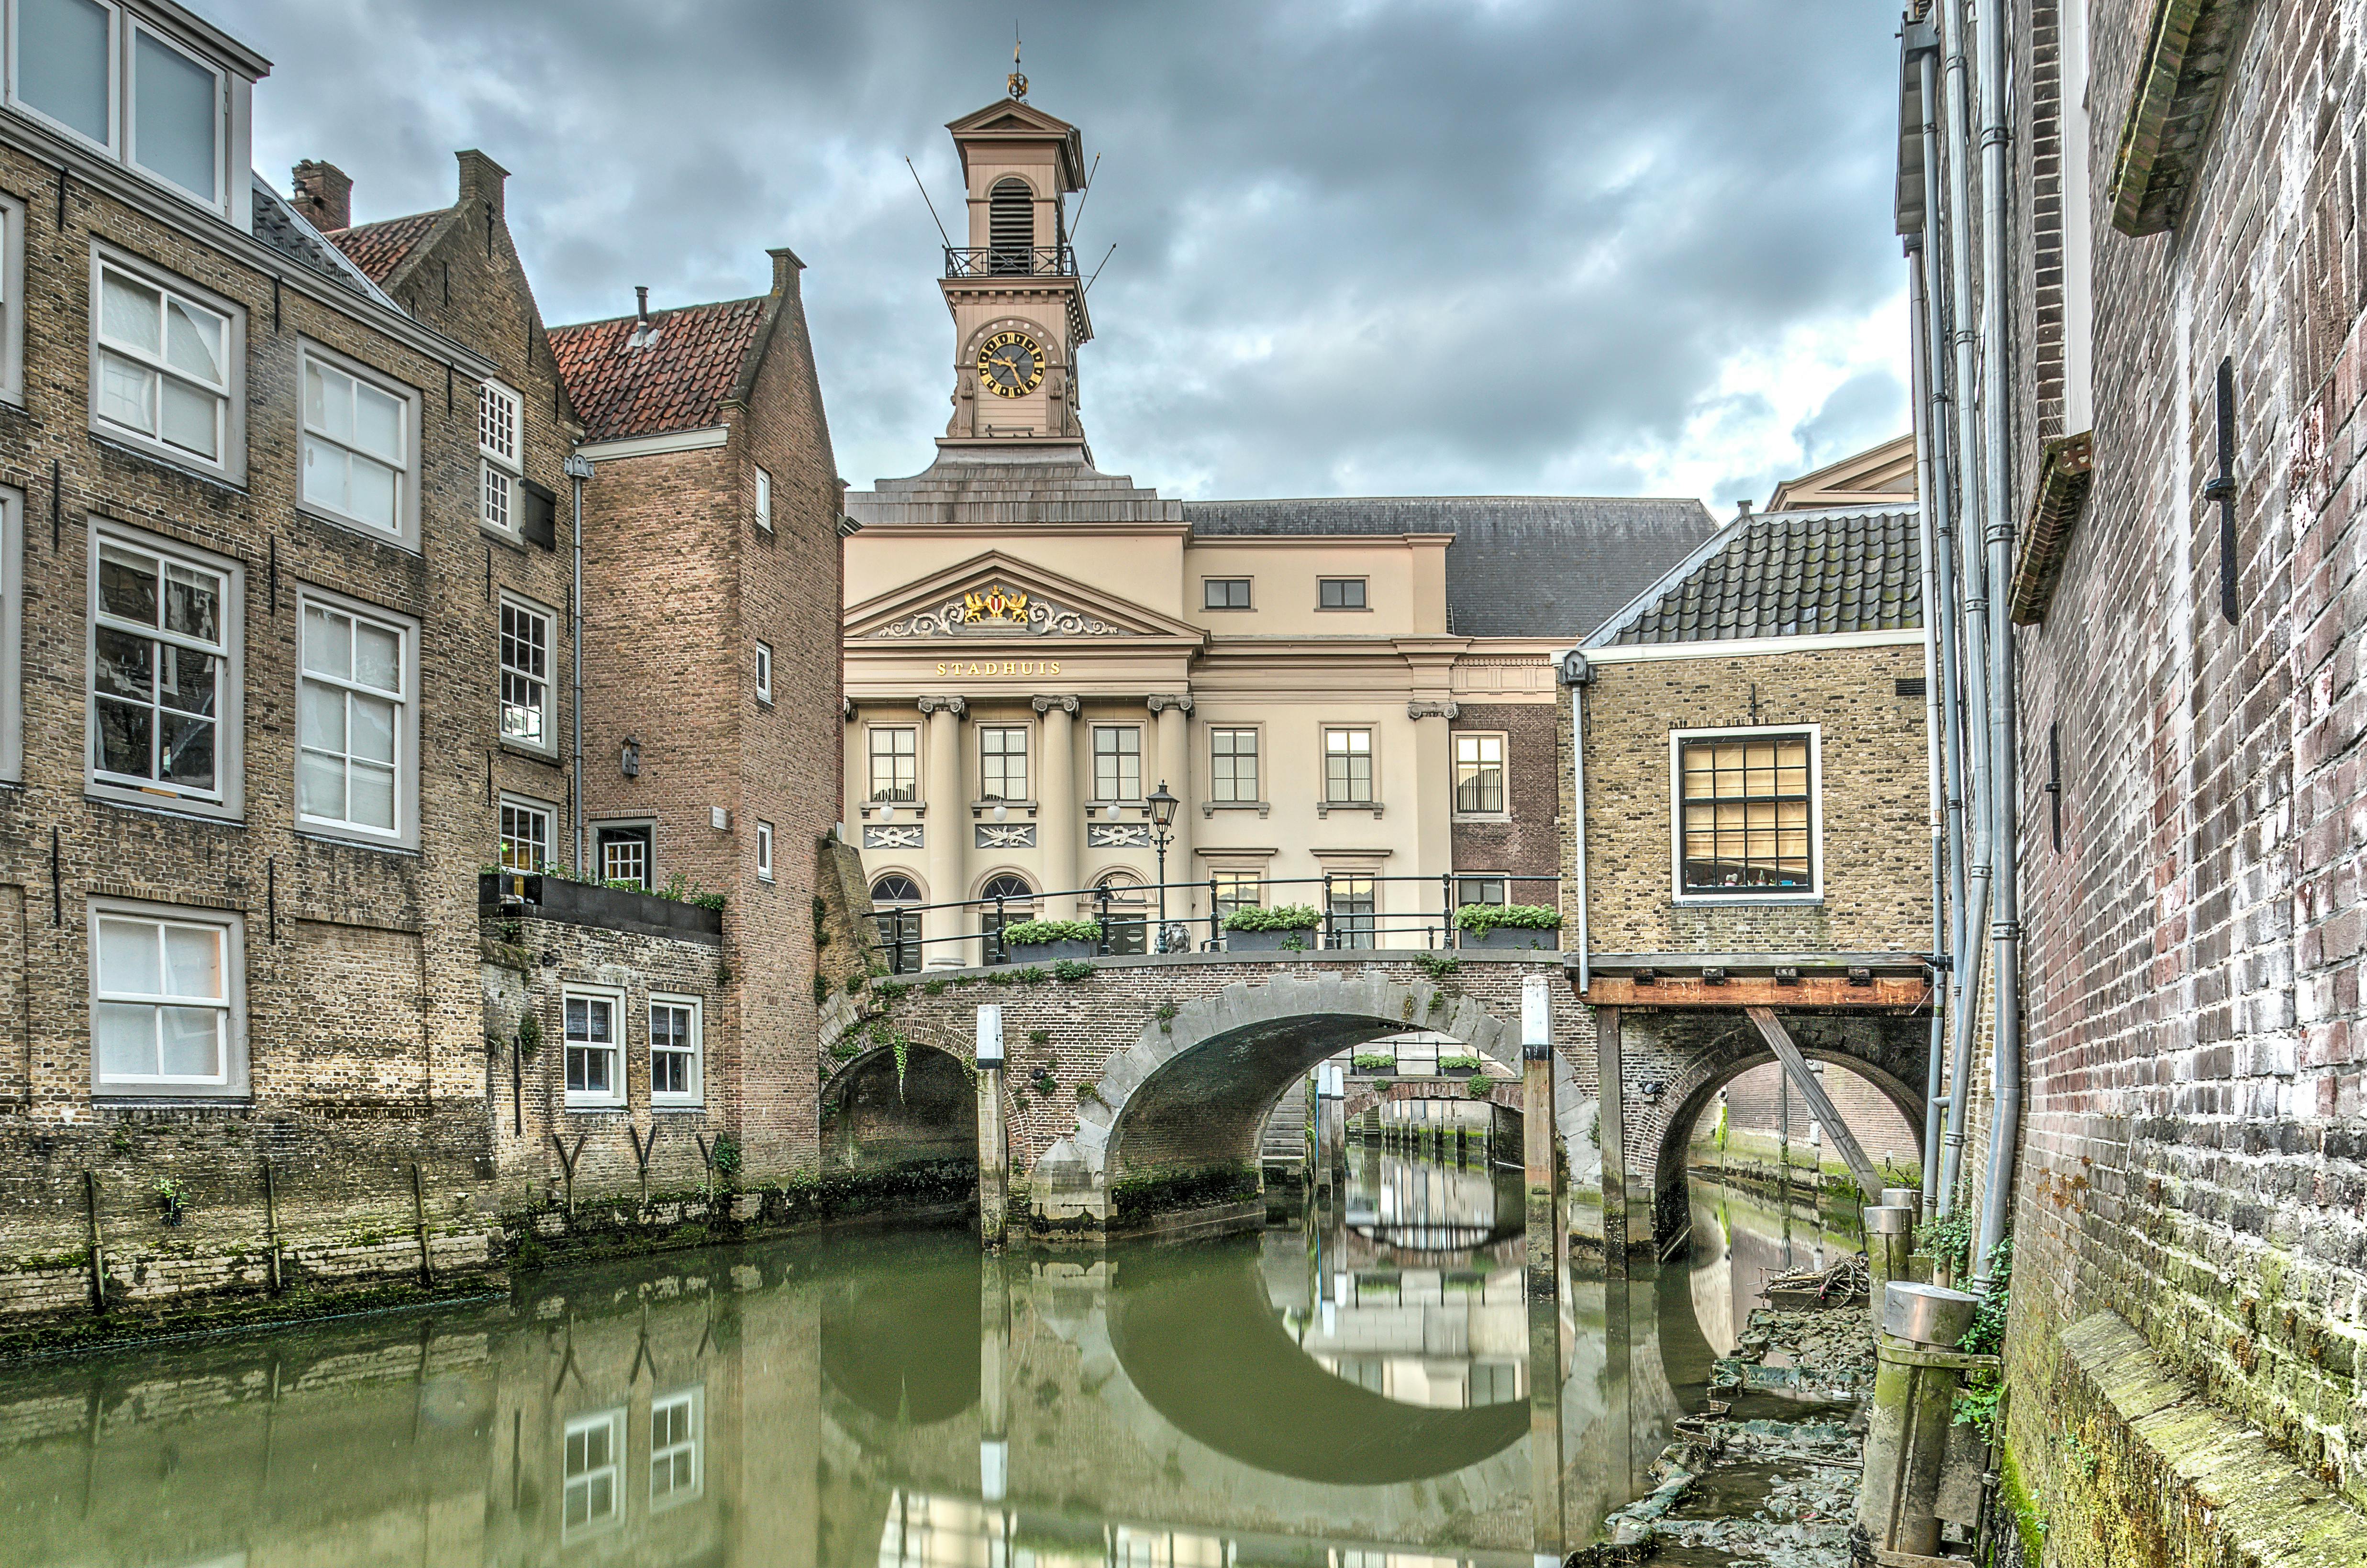 Smart wandeling in Dordrecht met een interactief stadsspel